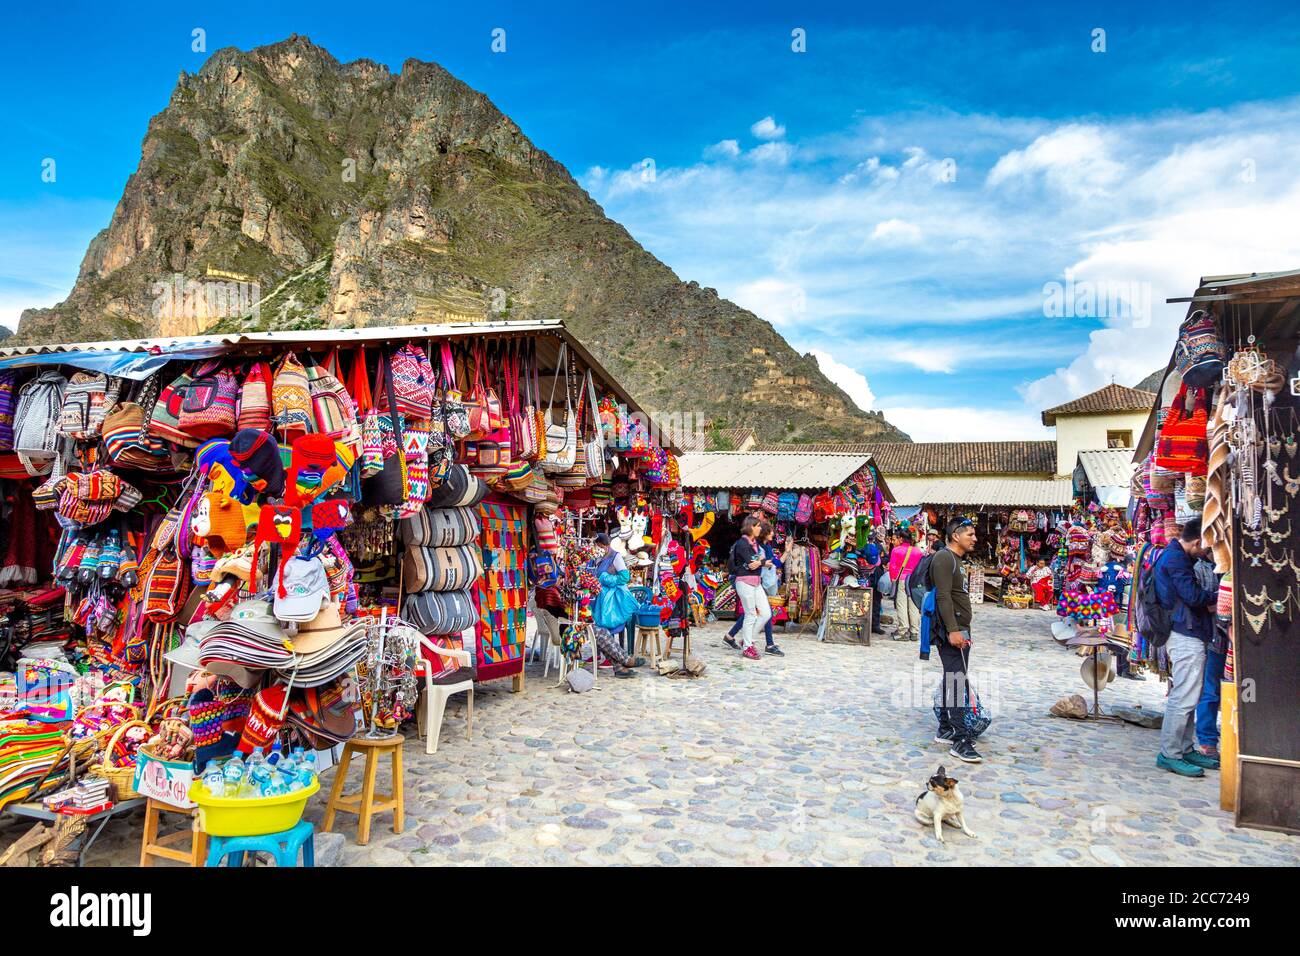 Mercado Artesanal souvenir and crafts market at Ollantaytambo, Peru Stock Photo